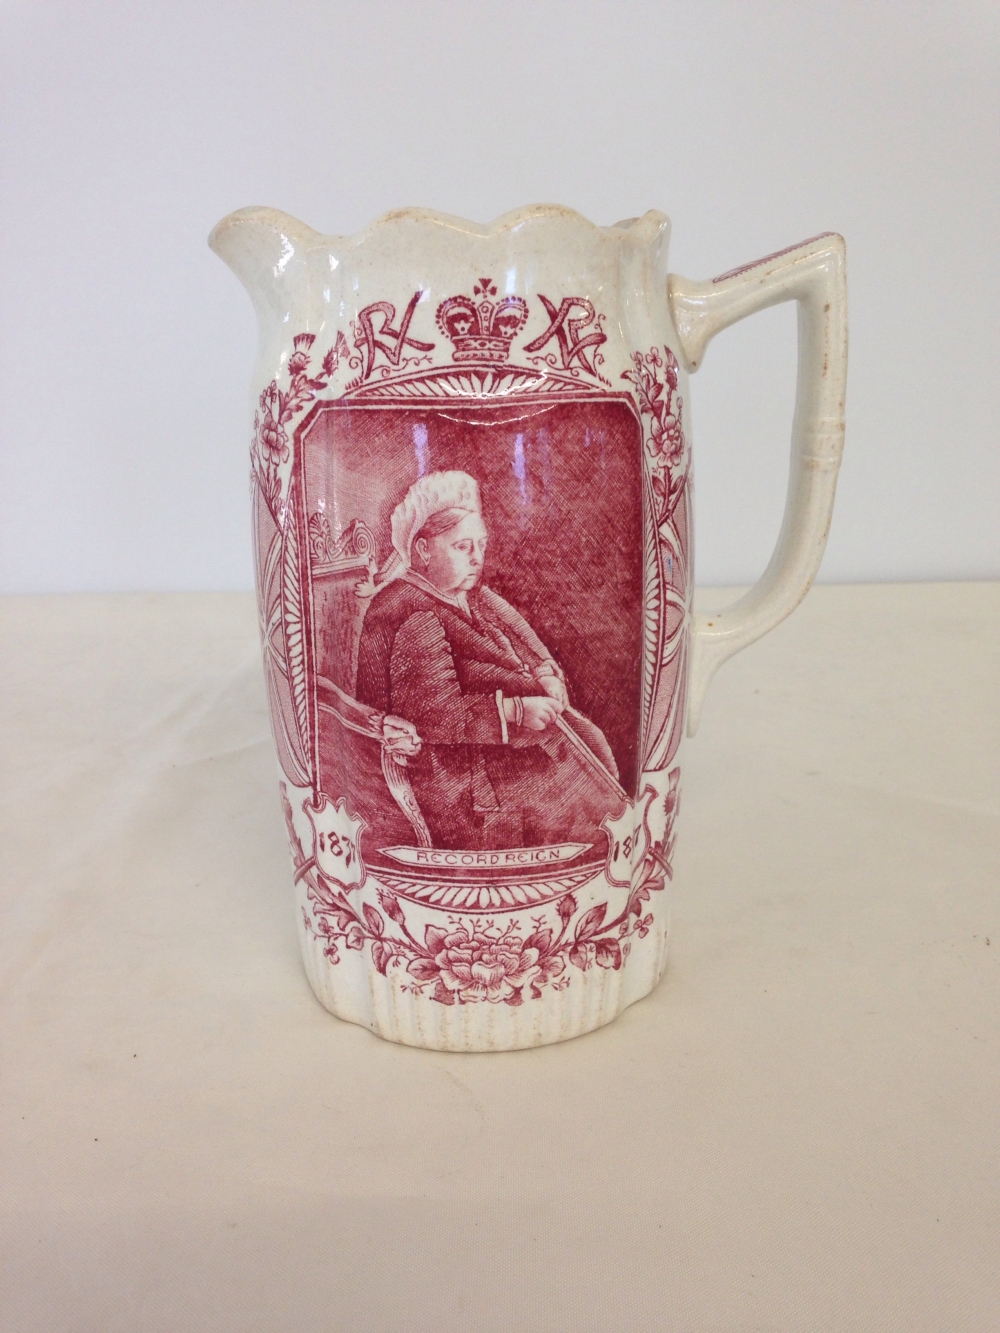 Queen Victoria commemorative jug by CP Co. Ltd Glasgow, Diamond Jubilee.